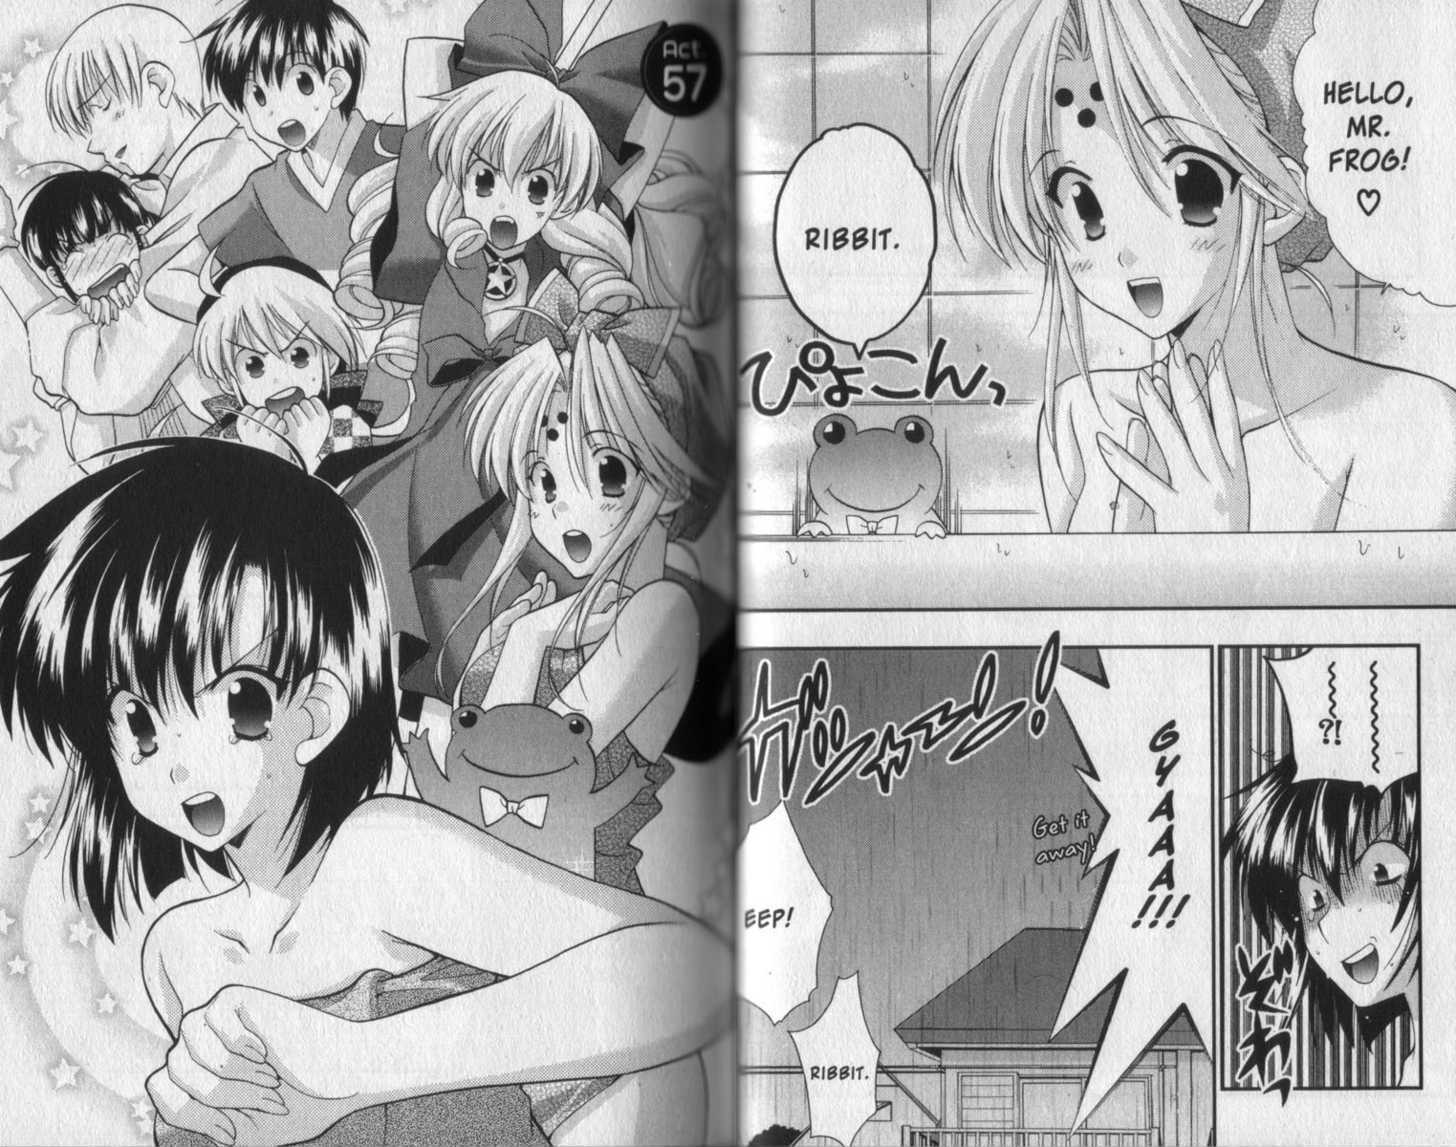 Girls Bravo Porn - Girls Bravo - Vol.9 Chapter 57 - Read Manhwa Hentai - Hentai Manga - Porn  Comics - Manhwa 18 - Hentai Haven - E hentai - Hentai Comics